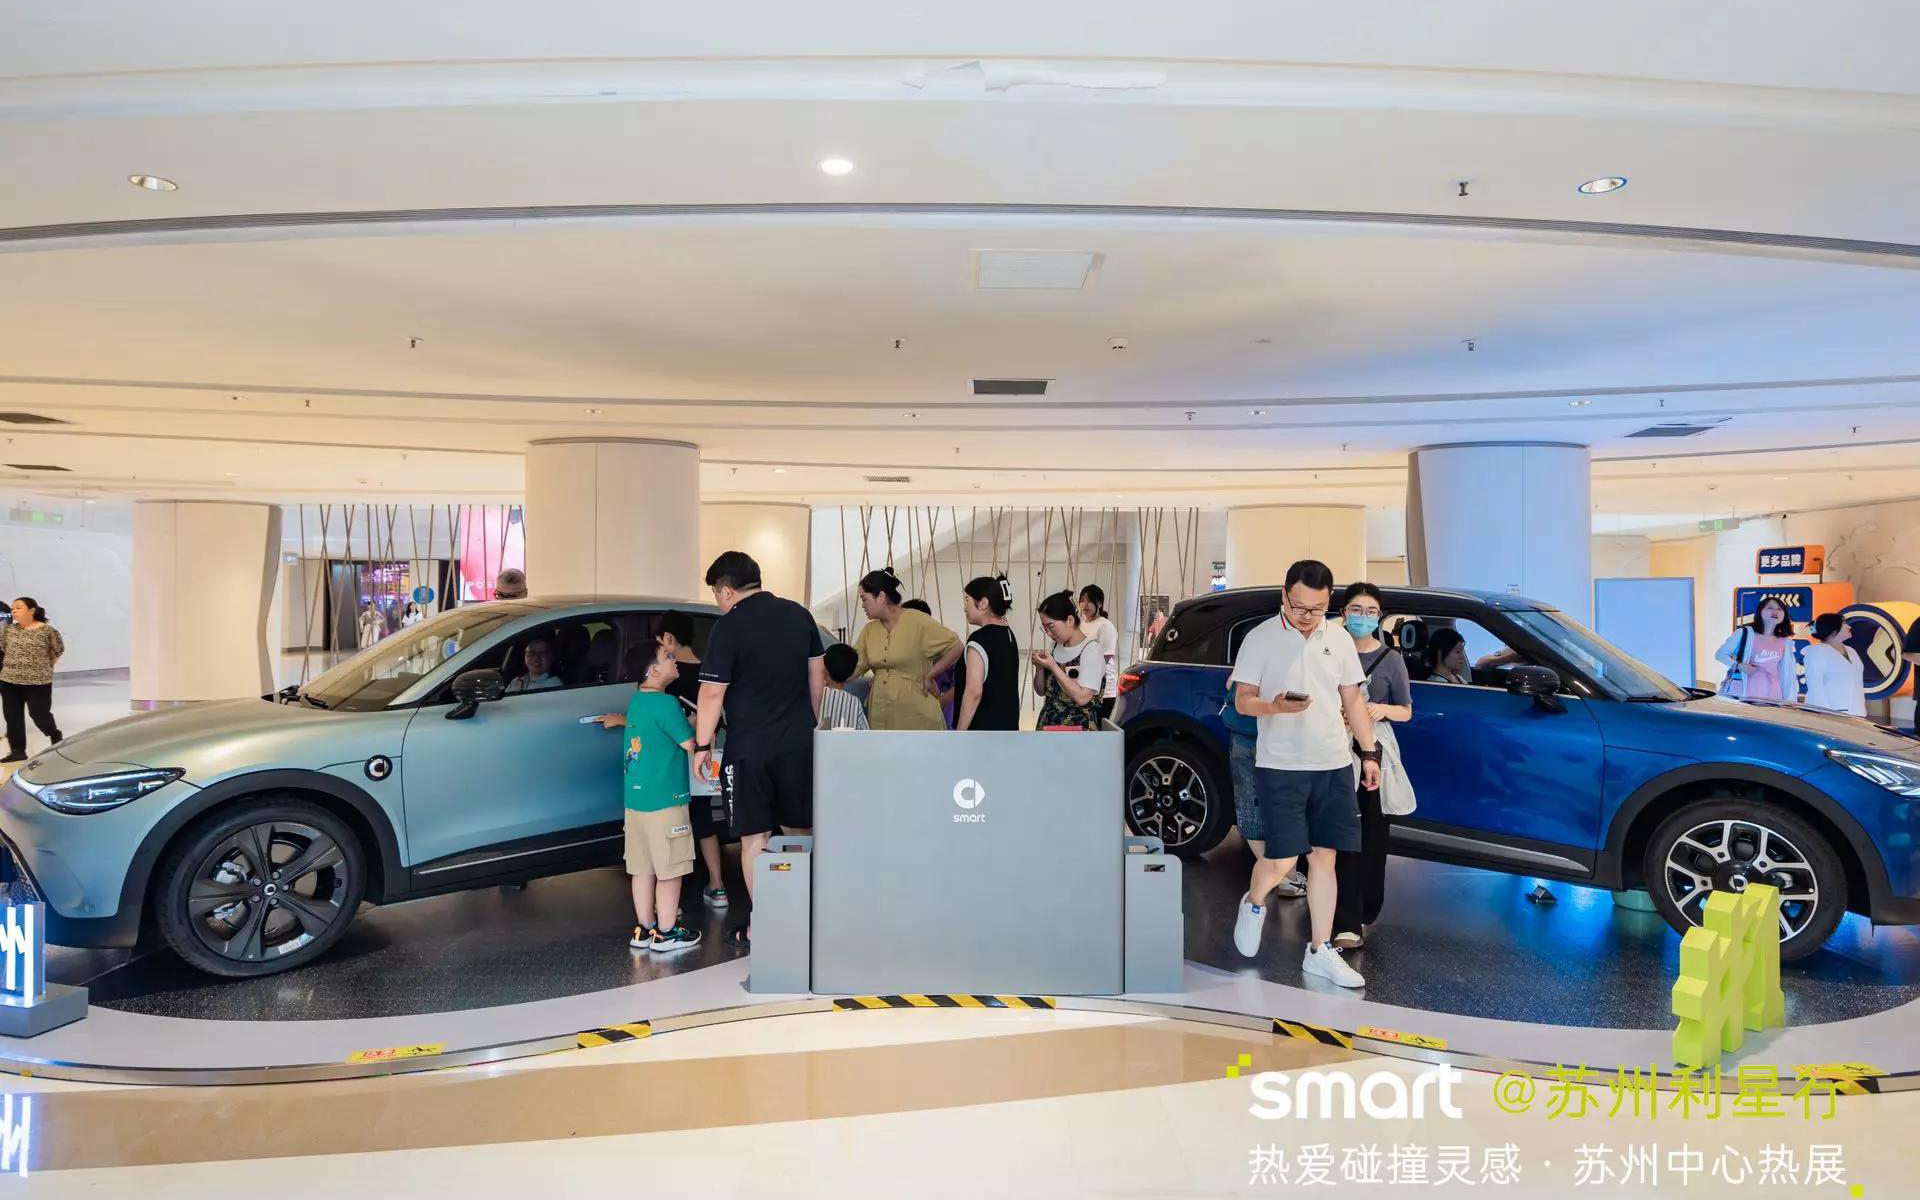 smart汽车  X  苏州中心  